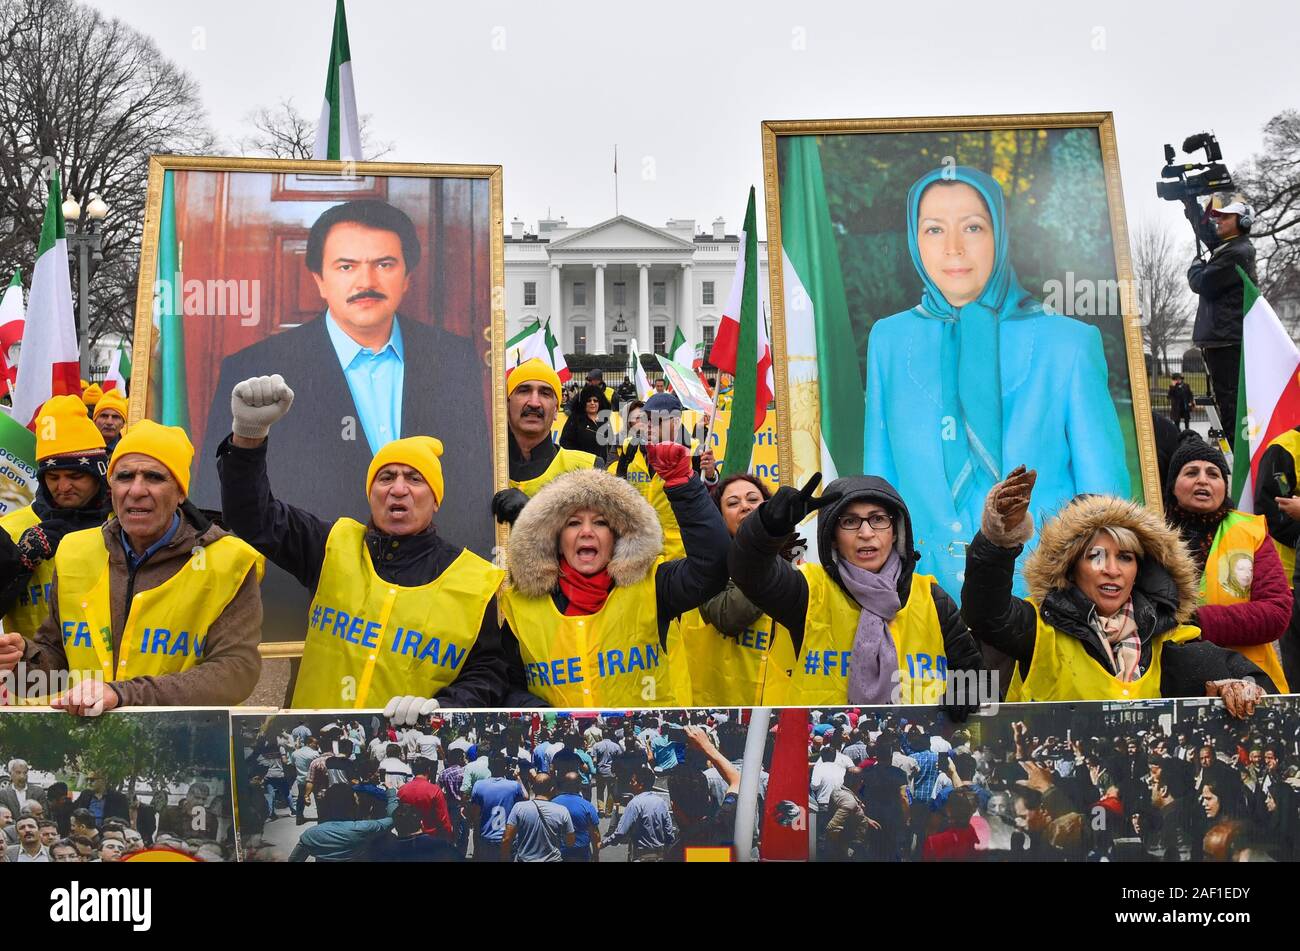 Washington, United States. 12 Dez, 2019. Die Demonstranten halten sie Porträts von iranischen Politiker Massoud Rajavii und seine Frau Maryam Rajavi, wie sie bei einer Rallye durch die Organisation der iranisch-amerikanische Gemeinschaften für einen Regimewechsel im Iran teilnehmen, in Washington, DC, am 8. März 2019. Die Gruppe ruft für ein iranisches Volk Aufstand für einen Regimewechsel in den herrschenden religiösen Partei bringen. Foto von Kevin Dietsch/UPI Quelle: UPI/Alamy leben Nachrichten Stockfoto